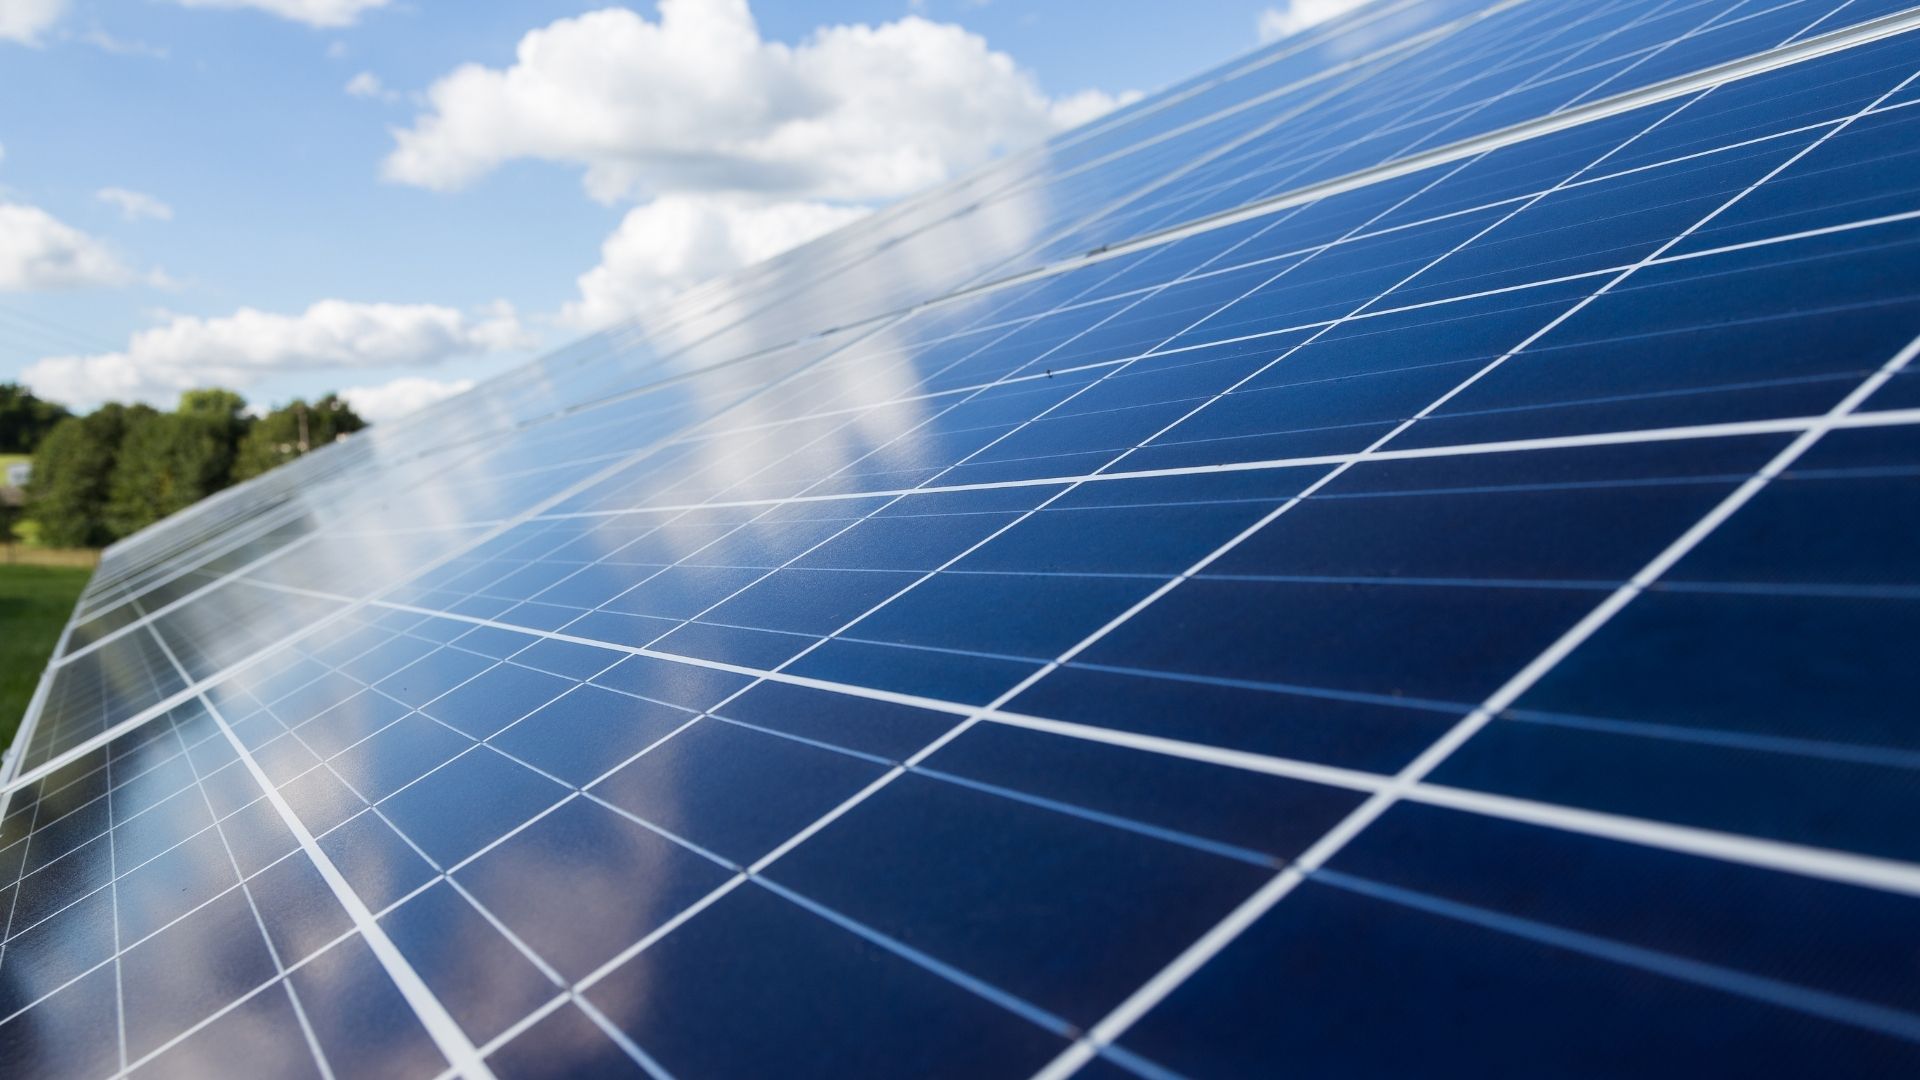 Fotovoltaico, un'opportunità tra crisi energetica e sostenibilità ambientale